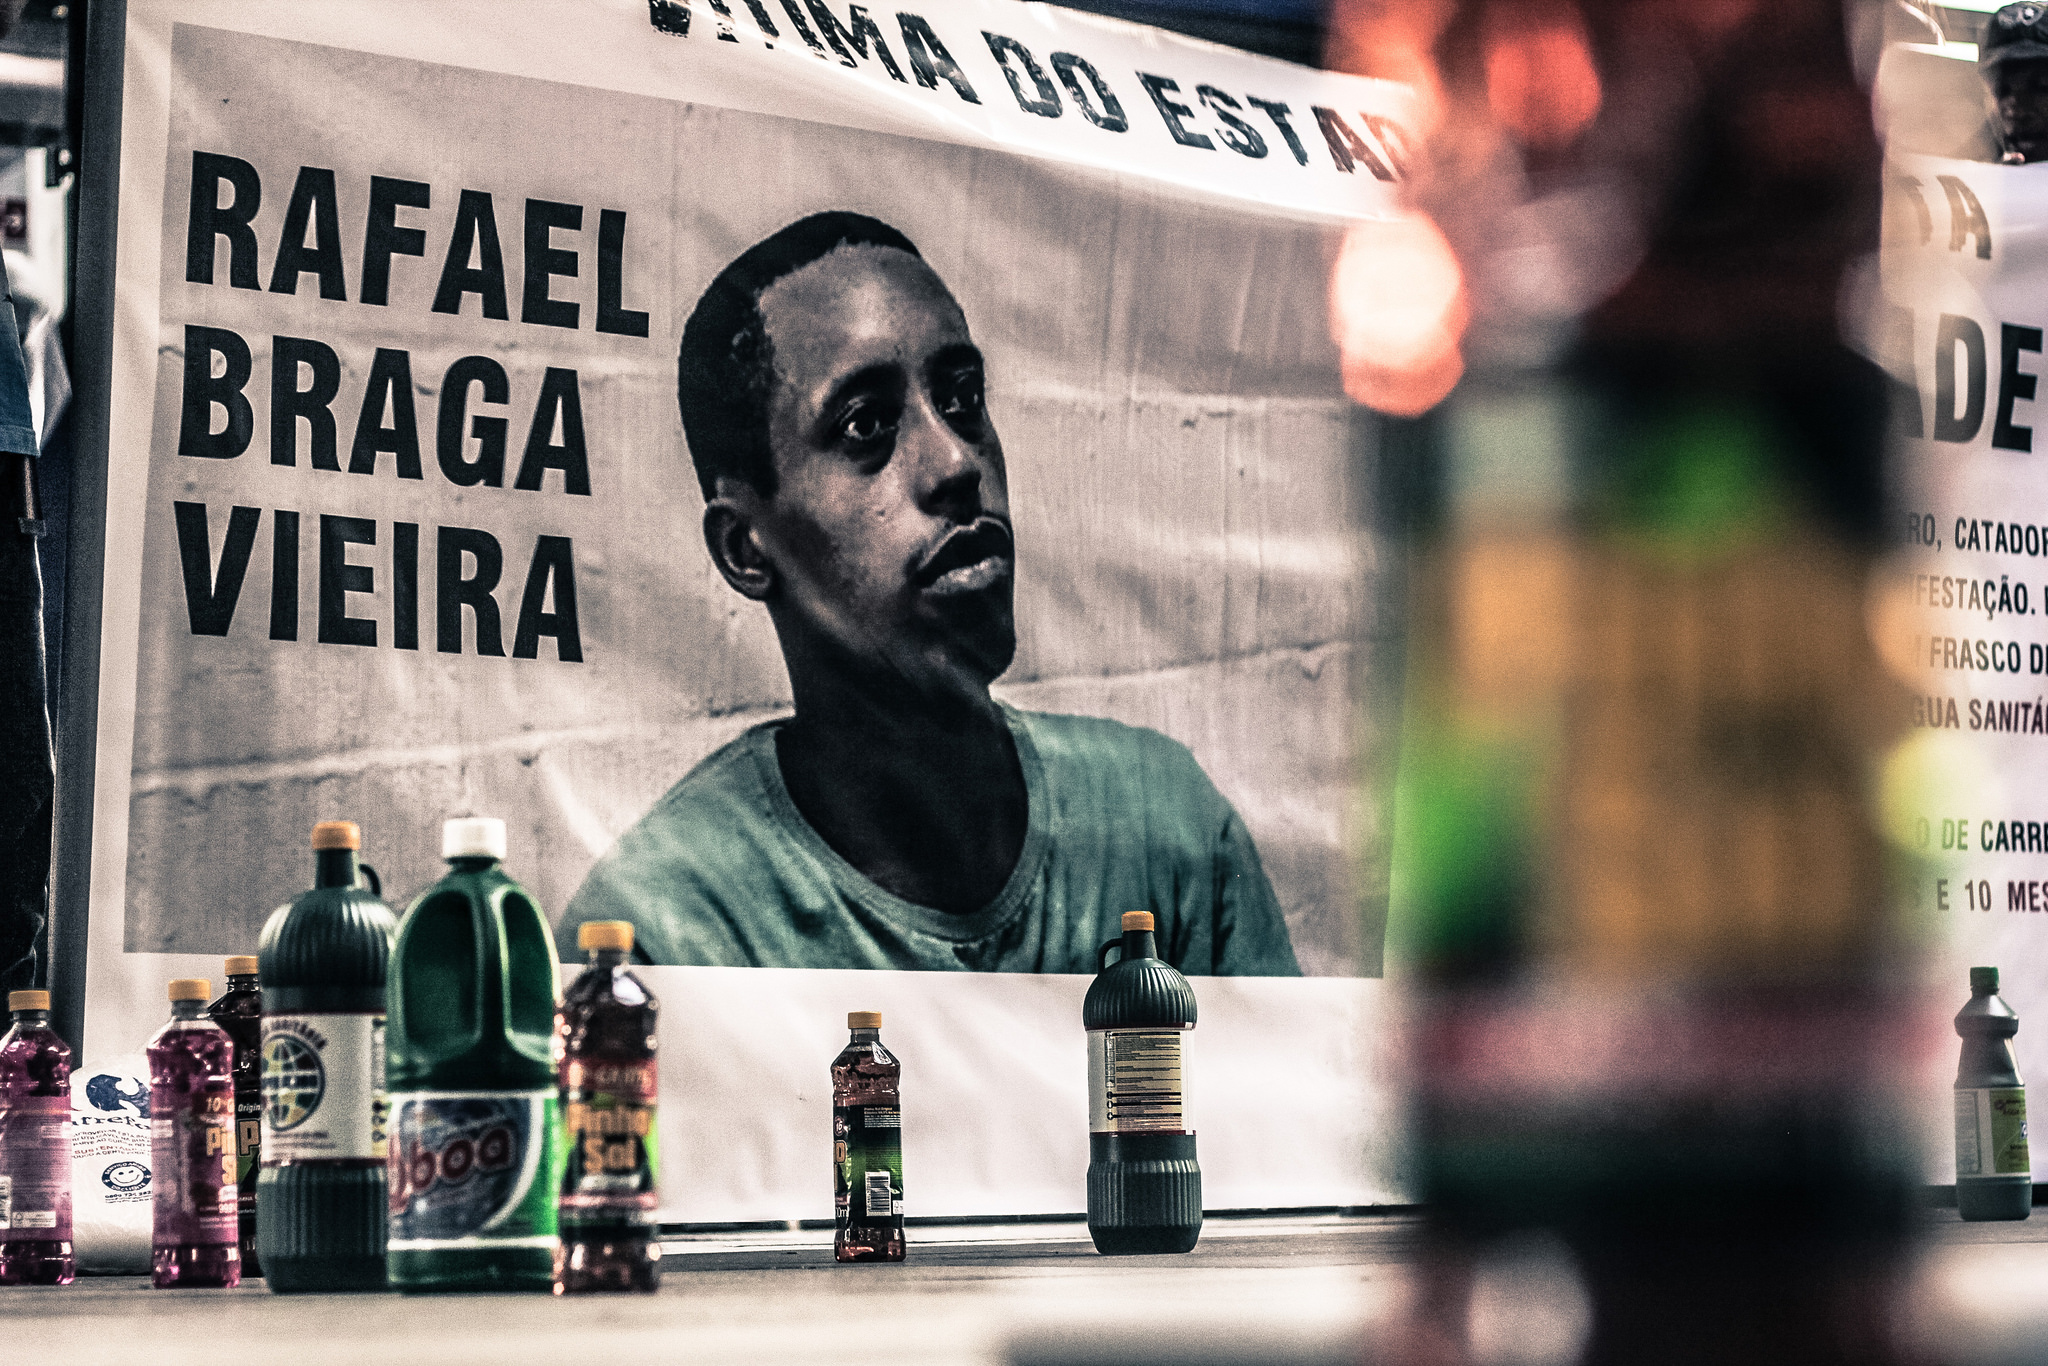 Une bannière lors d'une manifestation à l'appui de Rafael Braga Vieira en 2014. Photo: Mídia Ninja / Flickr, CC-BY-NC-SA 2.0